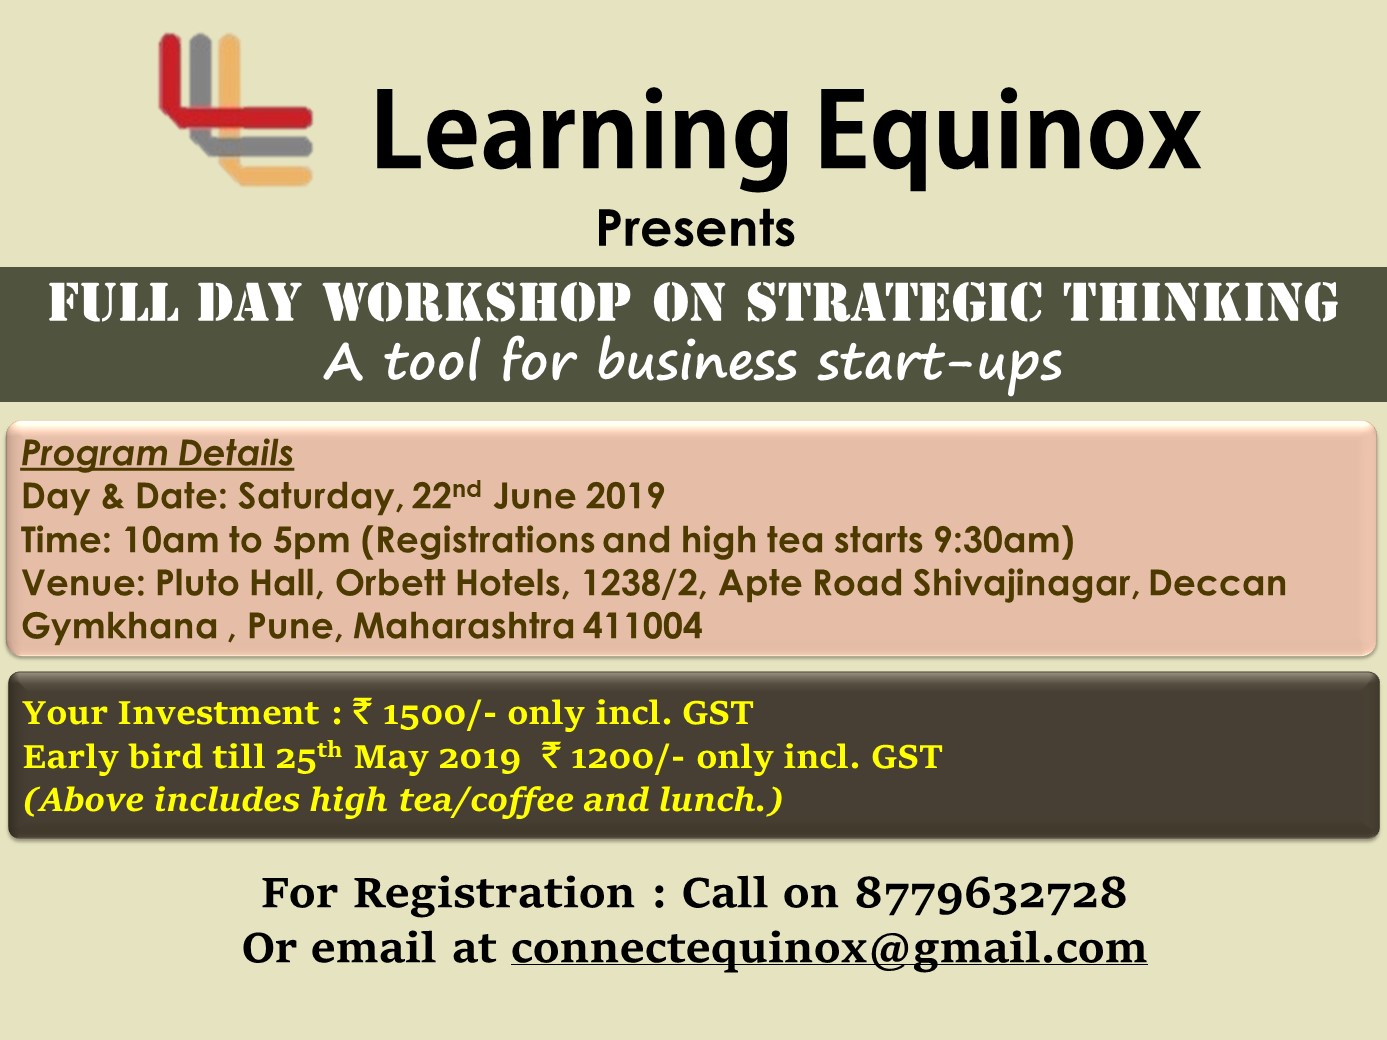 Full day workshop on Strategic thinking - A tool for business start-ups, Pune, Maharashtra, India